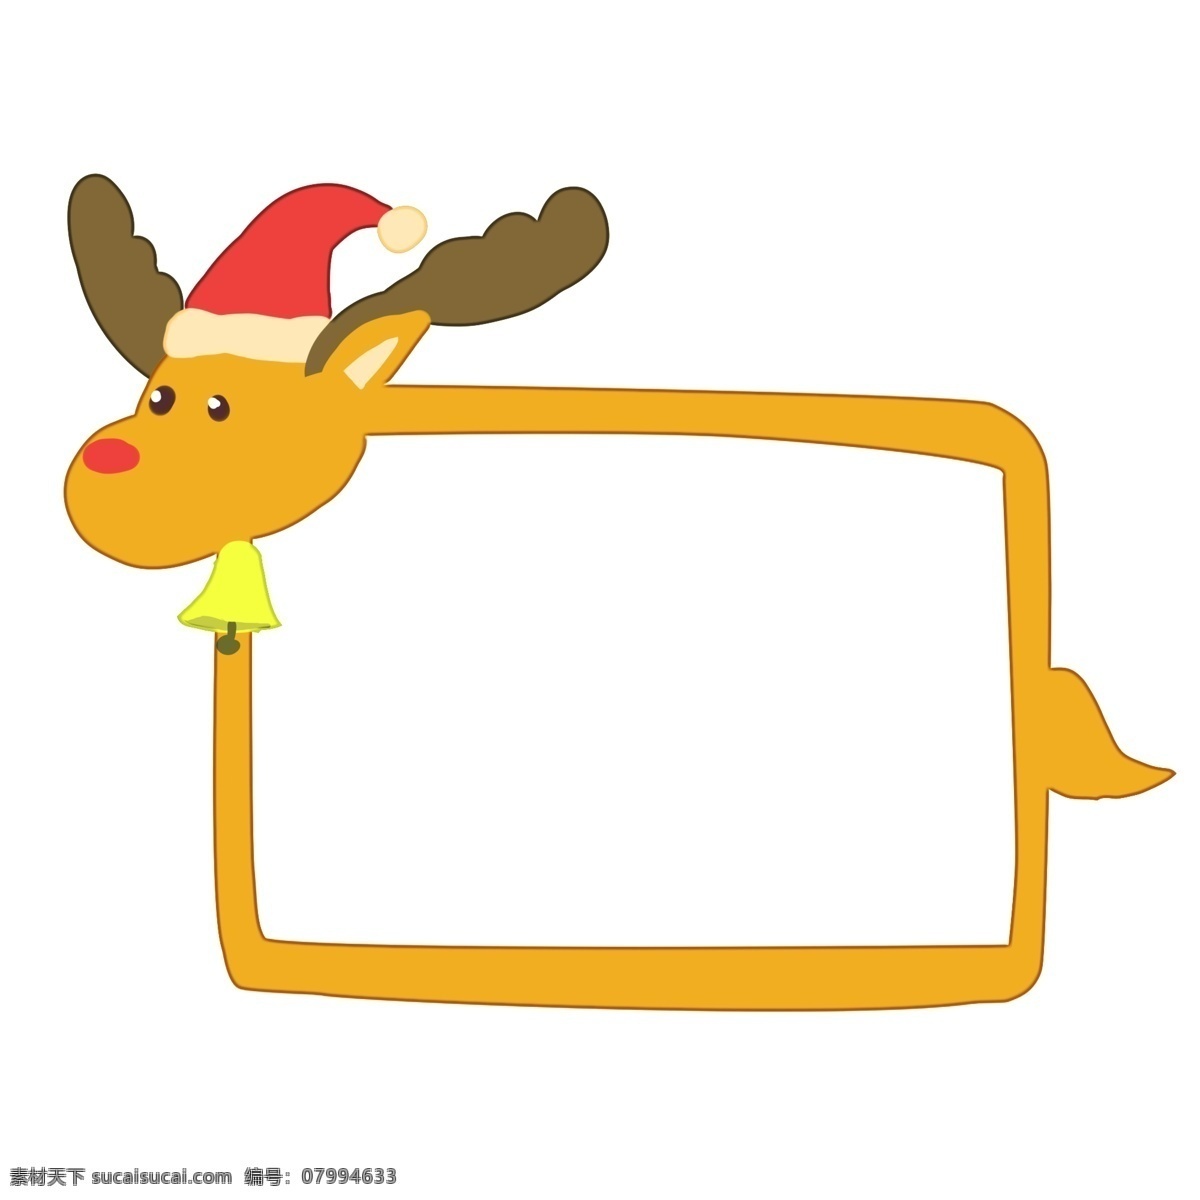 圣诞节 麋鹿 边框 插画 圣诞节边框 黄色的麋鹿 红色的圣诞帽 黄色的边框 边框插画 手绘边框 边框装饰